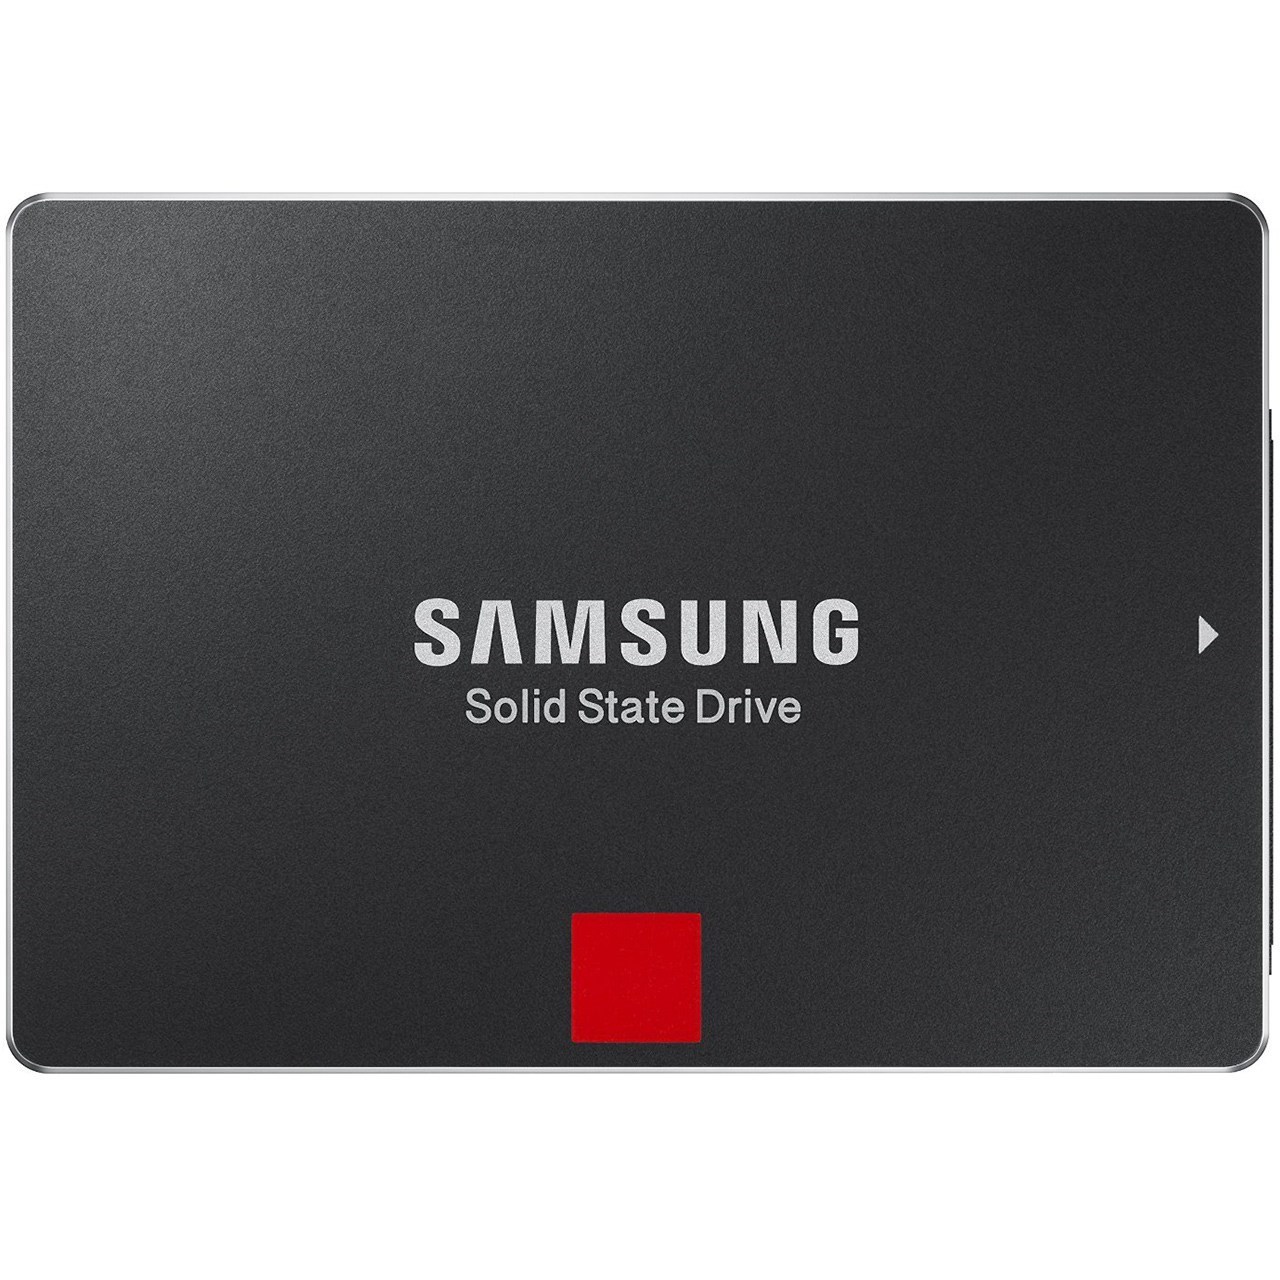 حافظه SSD سامسونگ مدل 850 پرو ظرفیت 256 گیگابایت